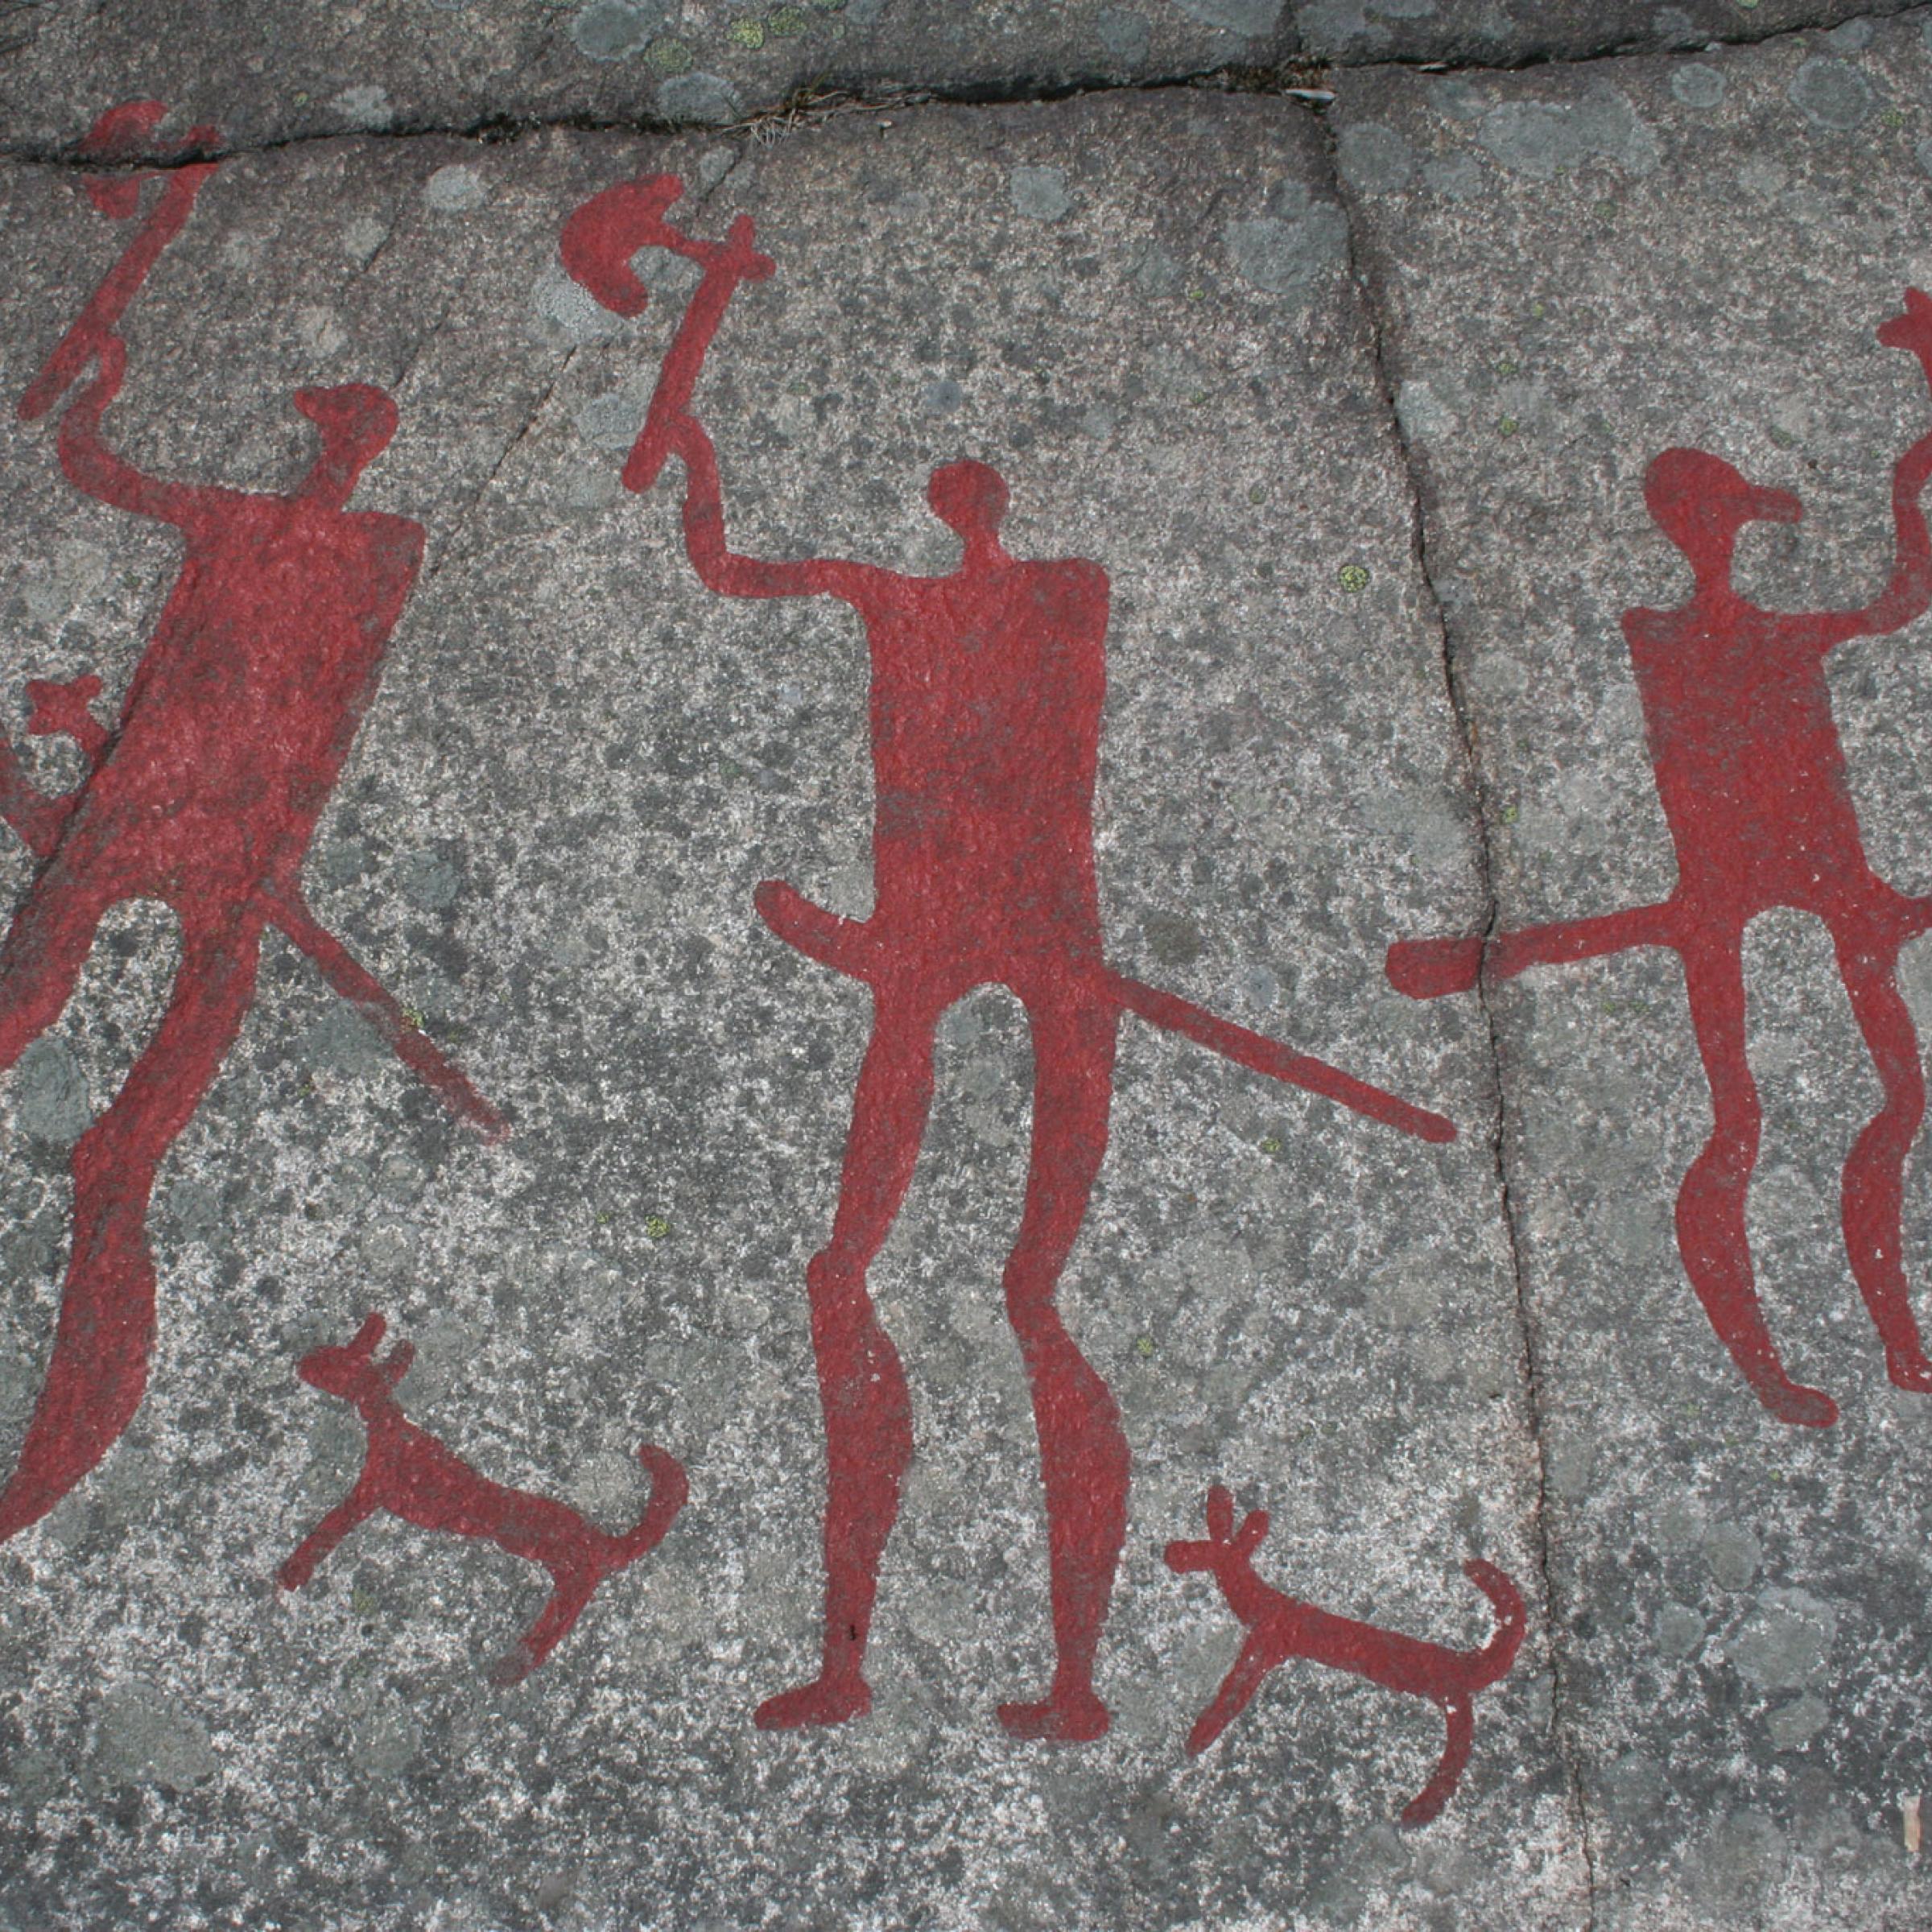 Das Foto zeigt eine Jahrtausende alte Felszeichnung aus der Gemeinde Tanum in Schweden. Prähistorische Menschen haben dort Bilder in den grauen Felsen geritzt und mit leuchtend roten Farben hervorgehoben. Zu sehen sind drei kriegerisch wirkende Figuren sowie drei Hunde.